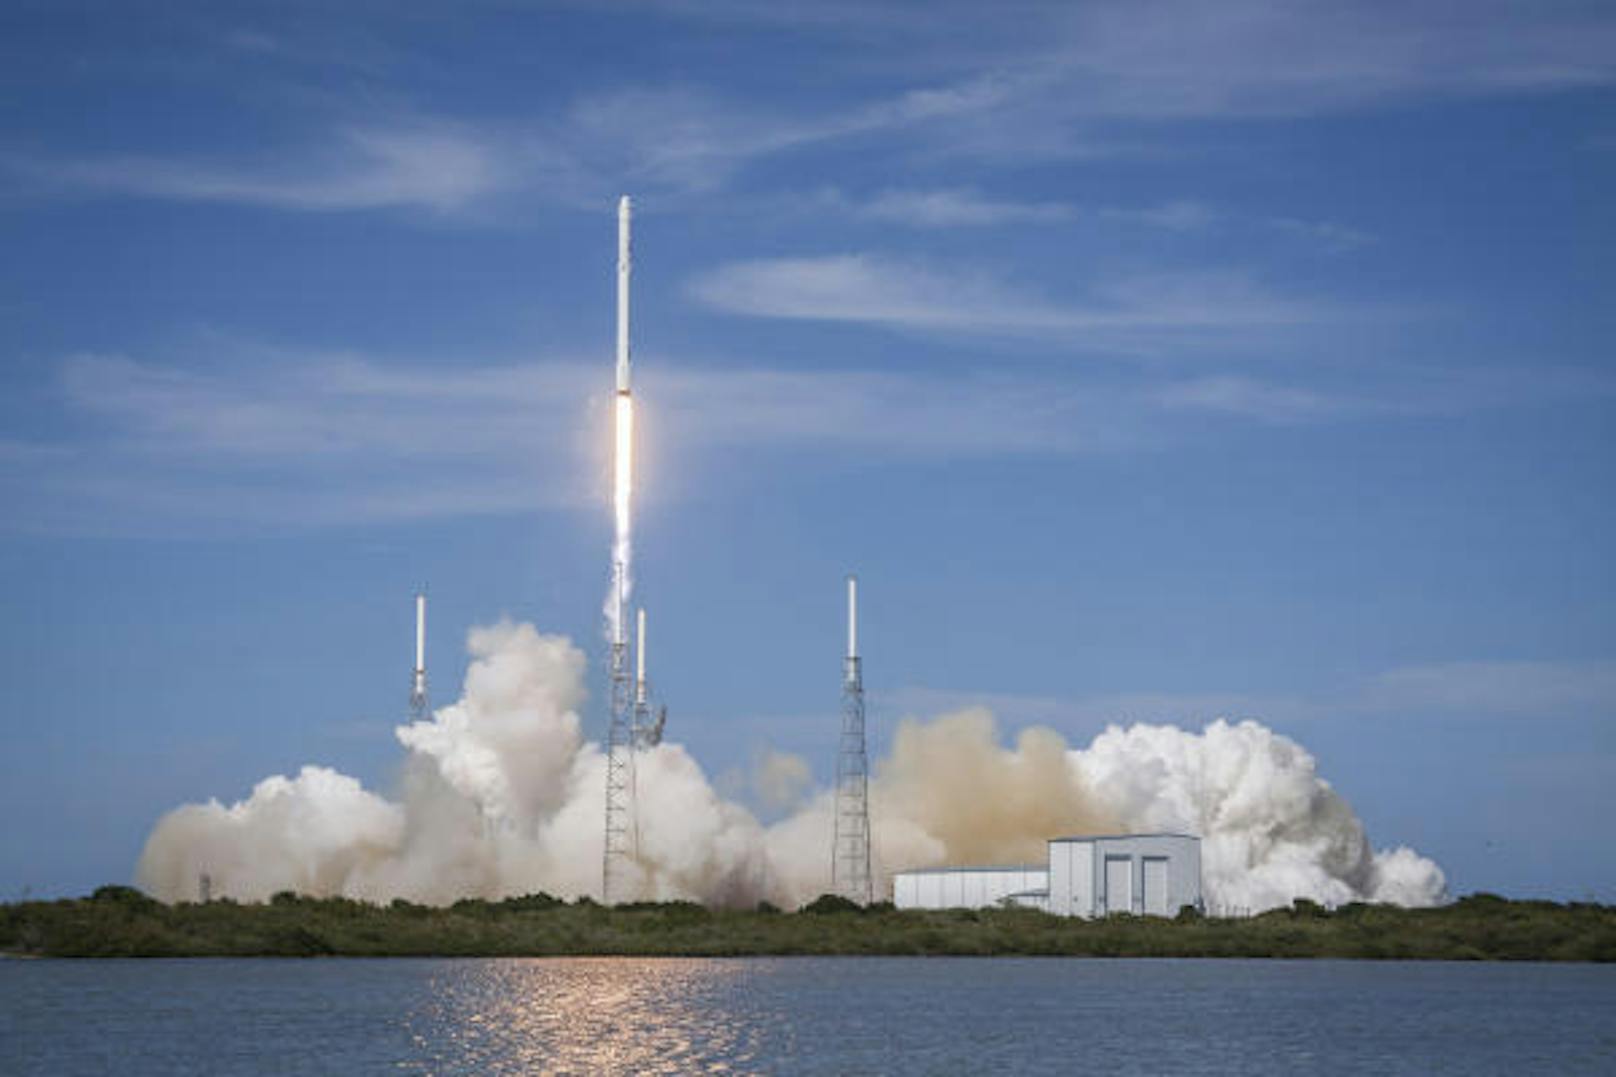 Am 17. Februar soll der Start für die ersten beiden Satelliten erfolgen. Die Prototypen werden an Bord einer Falcon-9-Rakete in die Erdumlaufbahn geschickt.